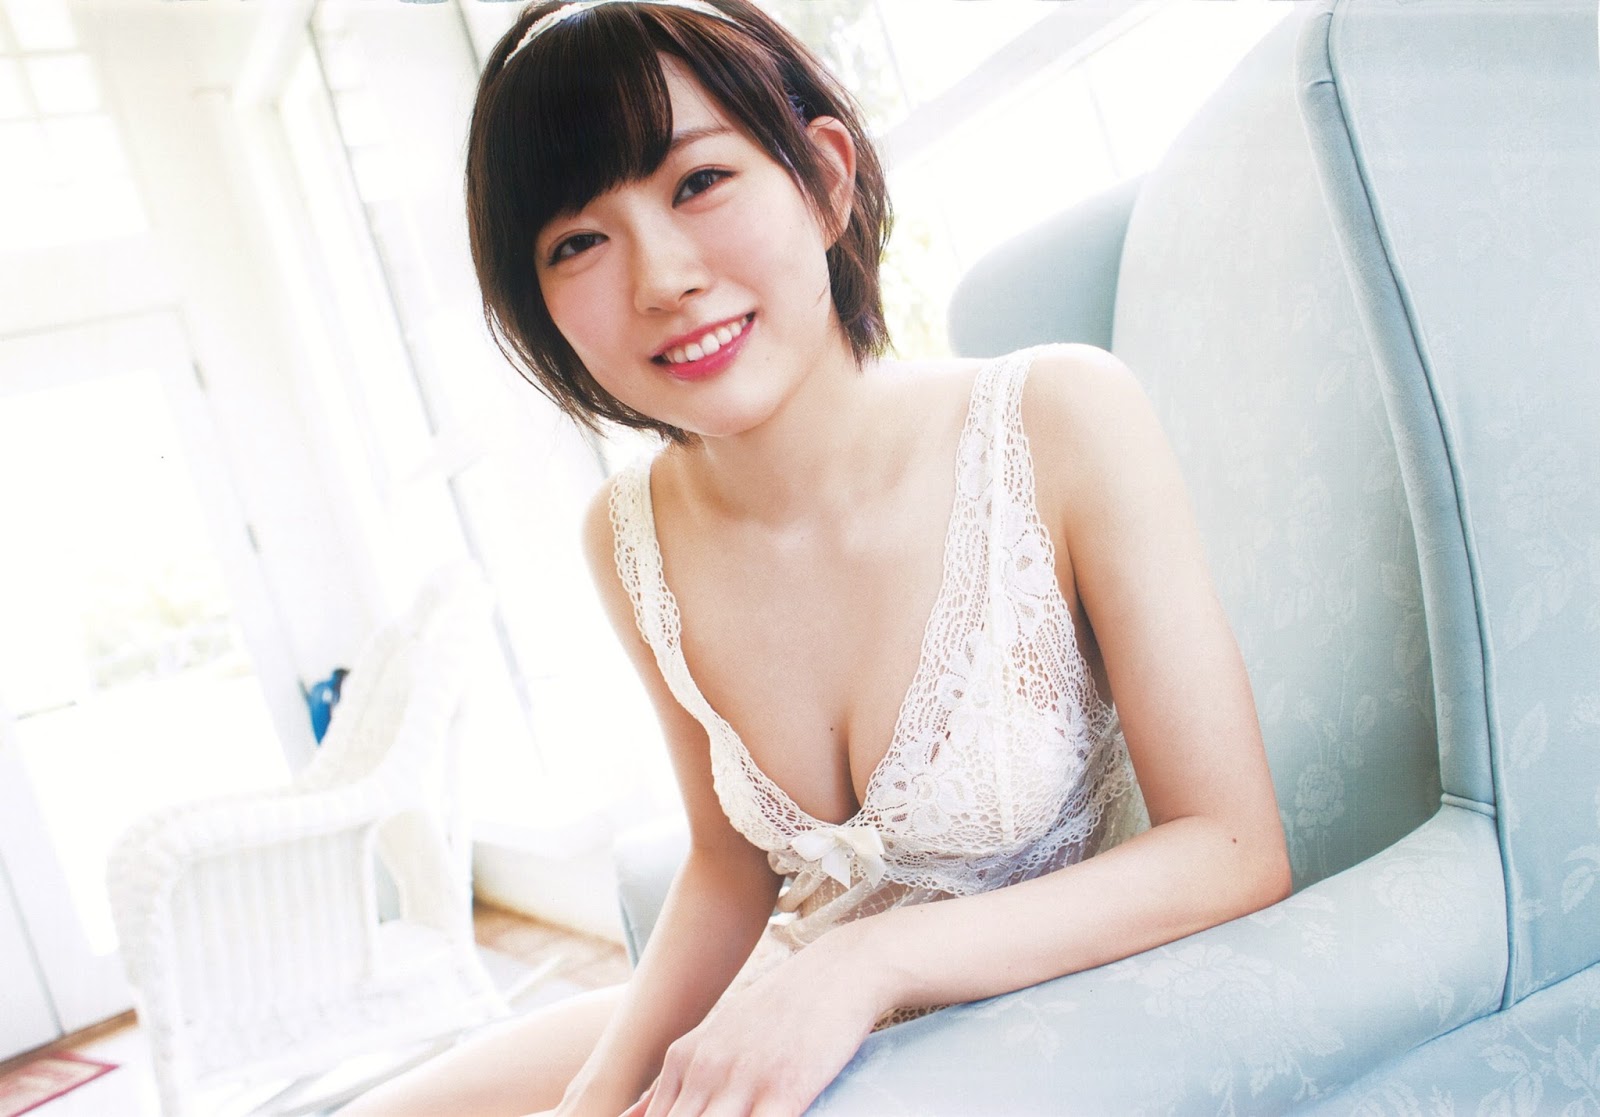 Miyuki Solo Fun Asian Hottie Striptease 2